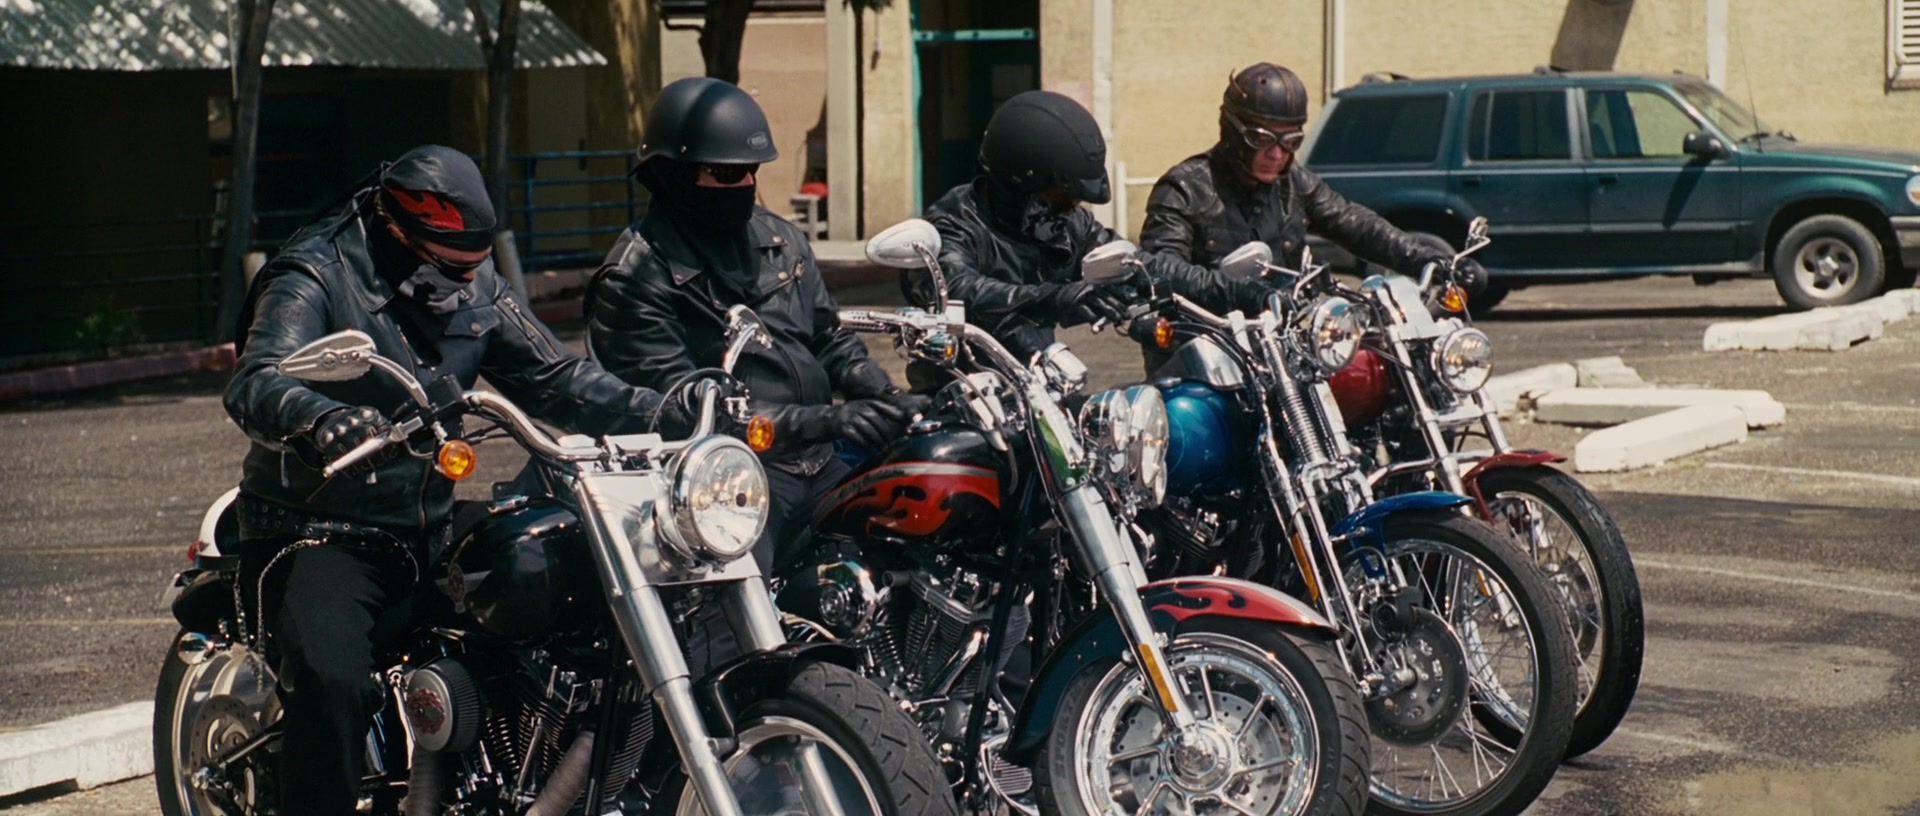 Мотоциклы из фильма реальные кабаны